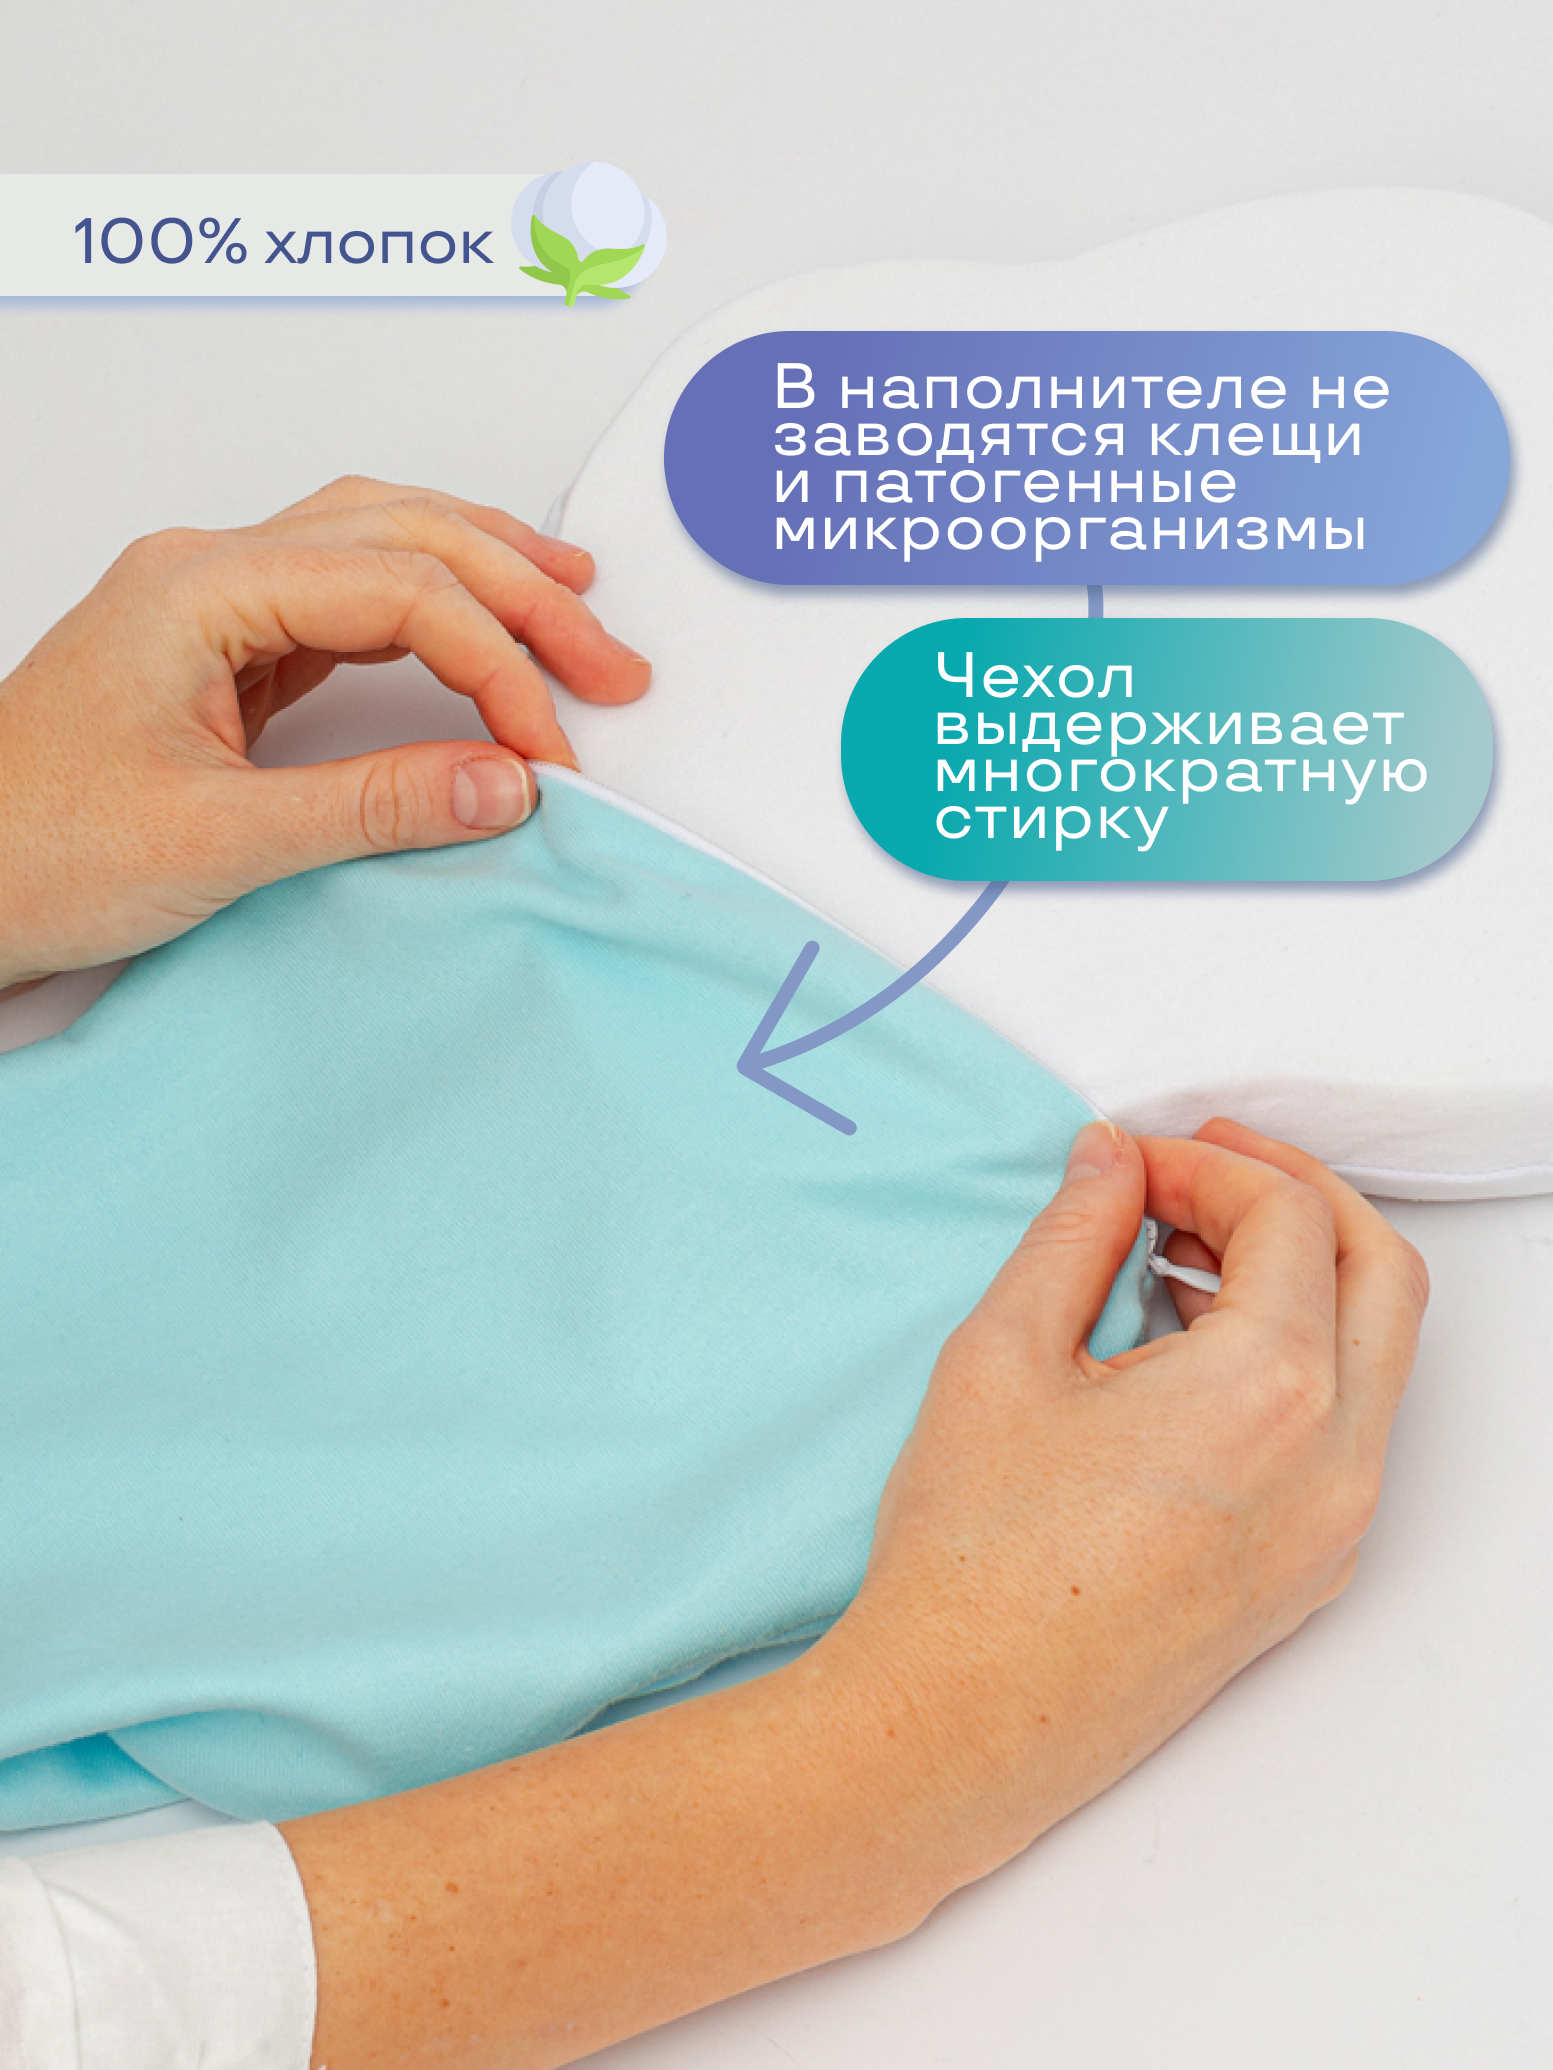 Подушка для новорожденных Dr. Dream анатомическая - фото 7